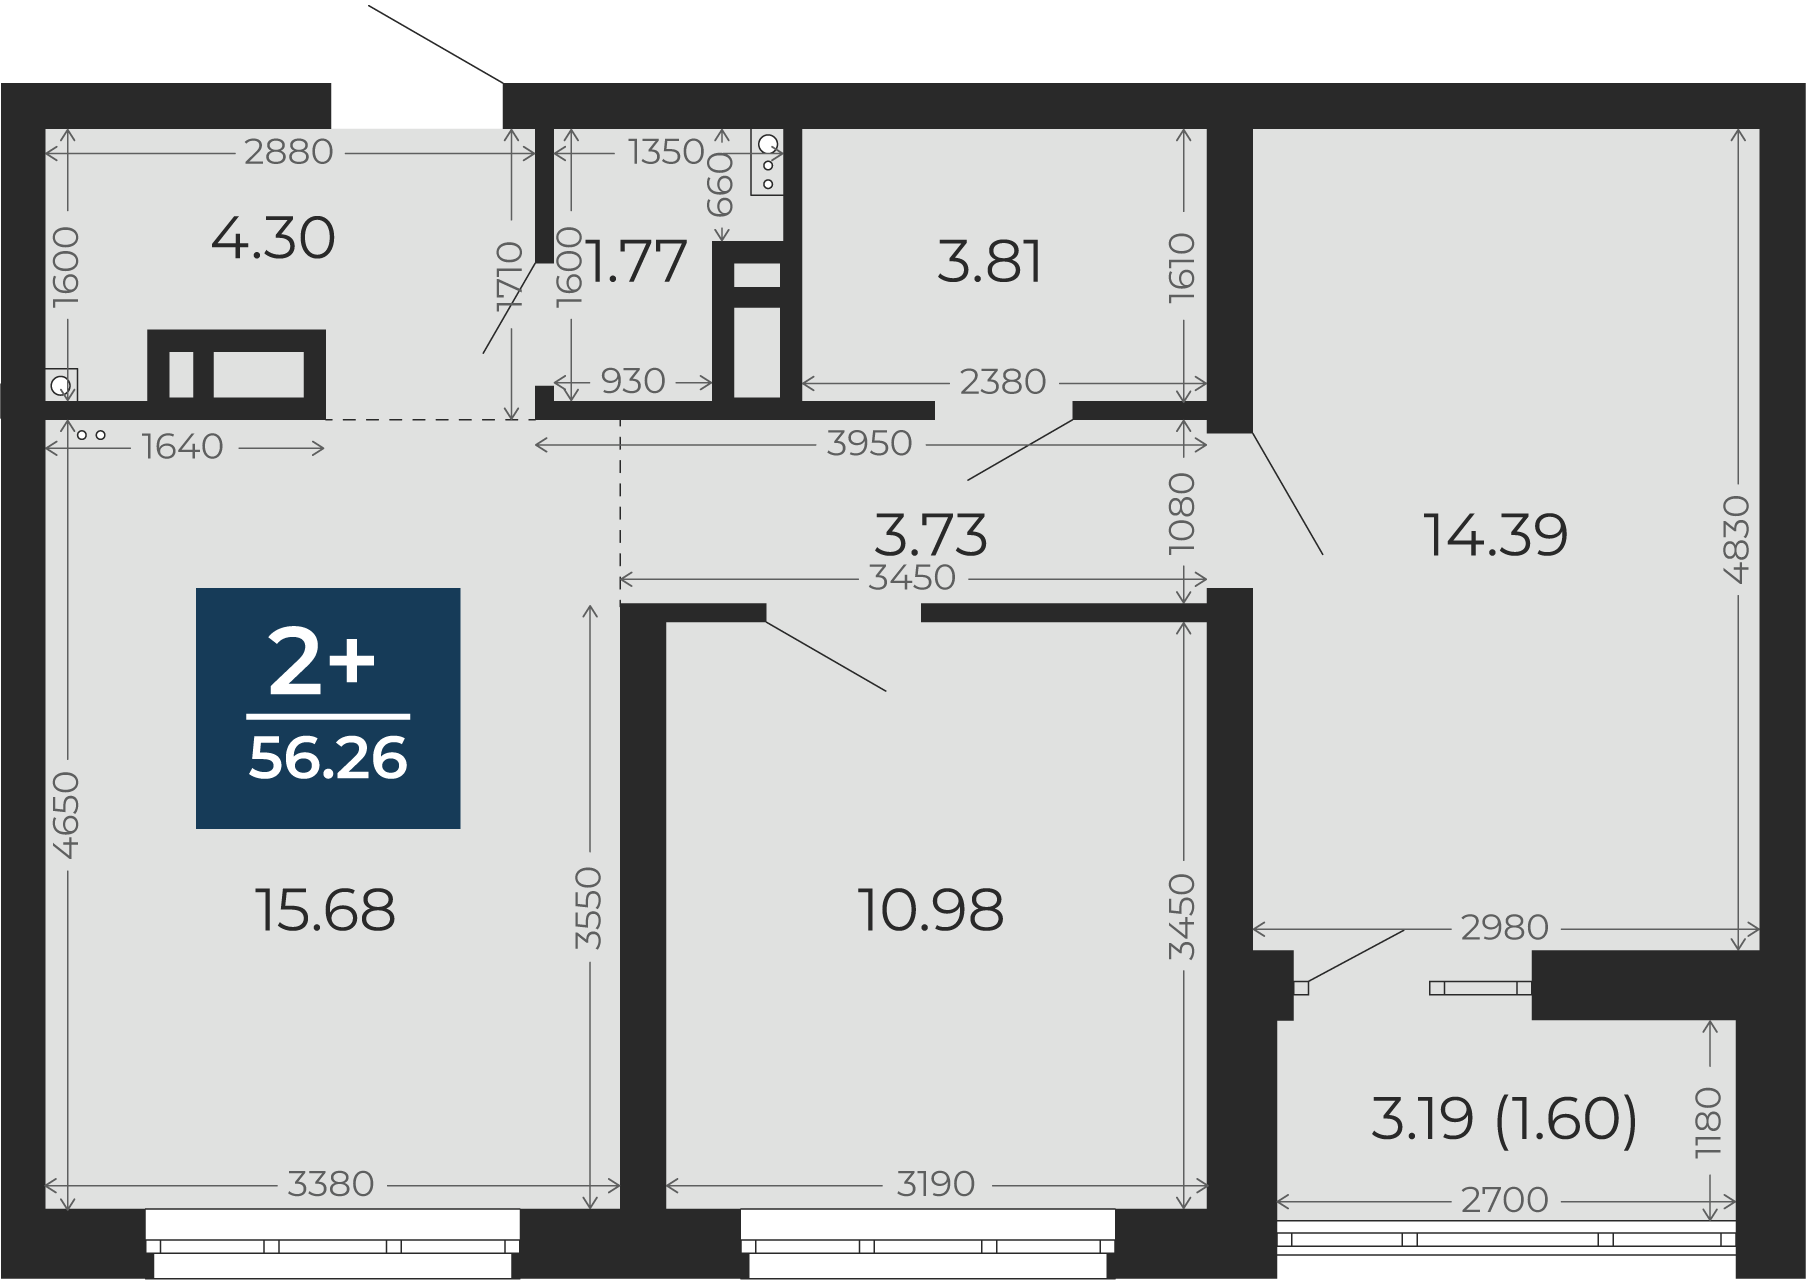 Квартира № 54, 2-комнатная, 56.26 кв. м, 8 этаж